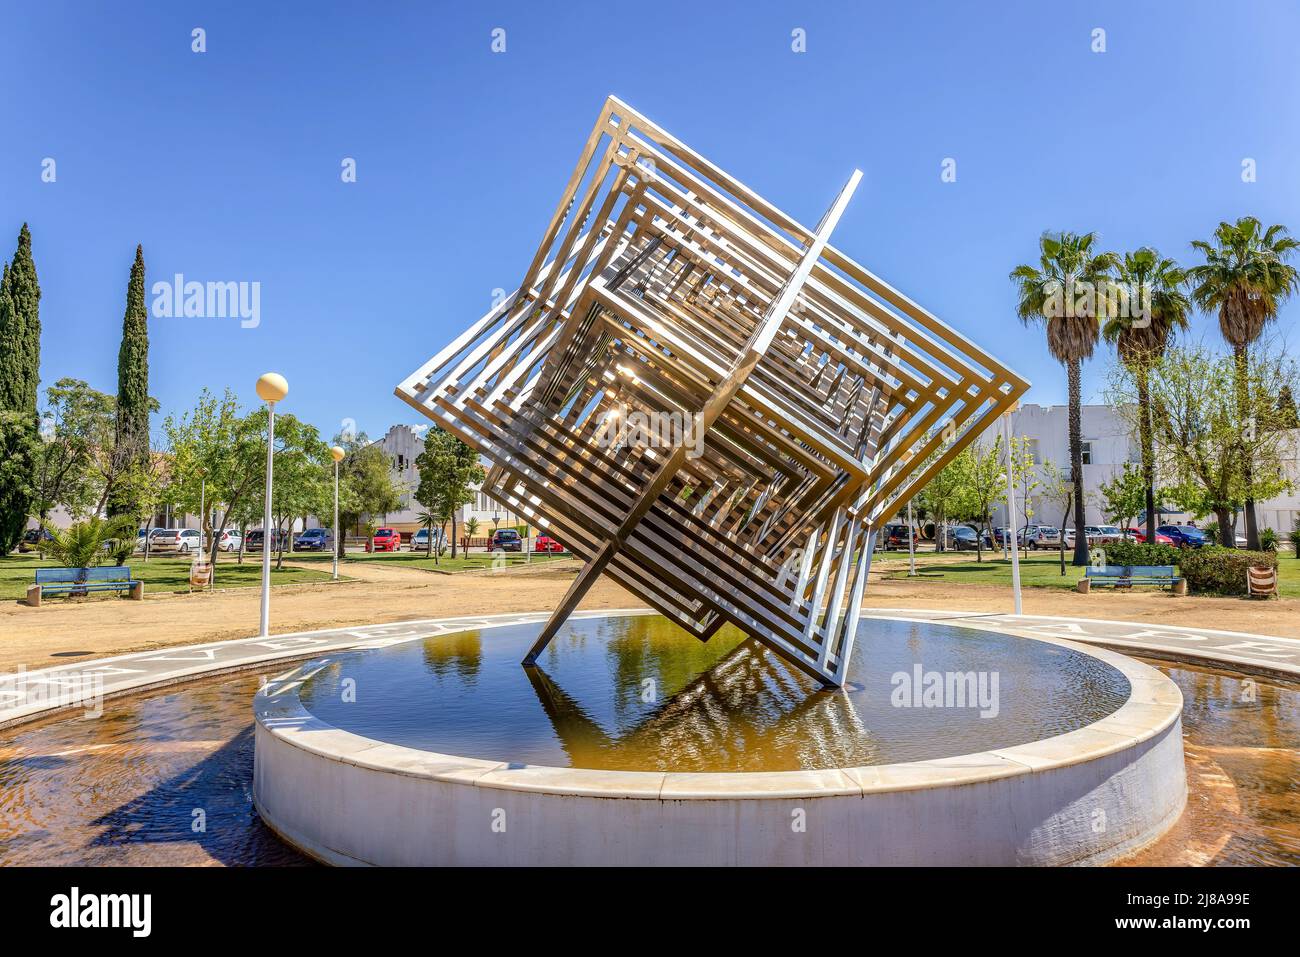 Huelva, Spagna - 28 aprile 2022: Monumento a cubo in acciaio inossidabile nei giardini del Campus de “El Carmen” dell’Università di Huelva. Foto Stock